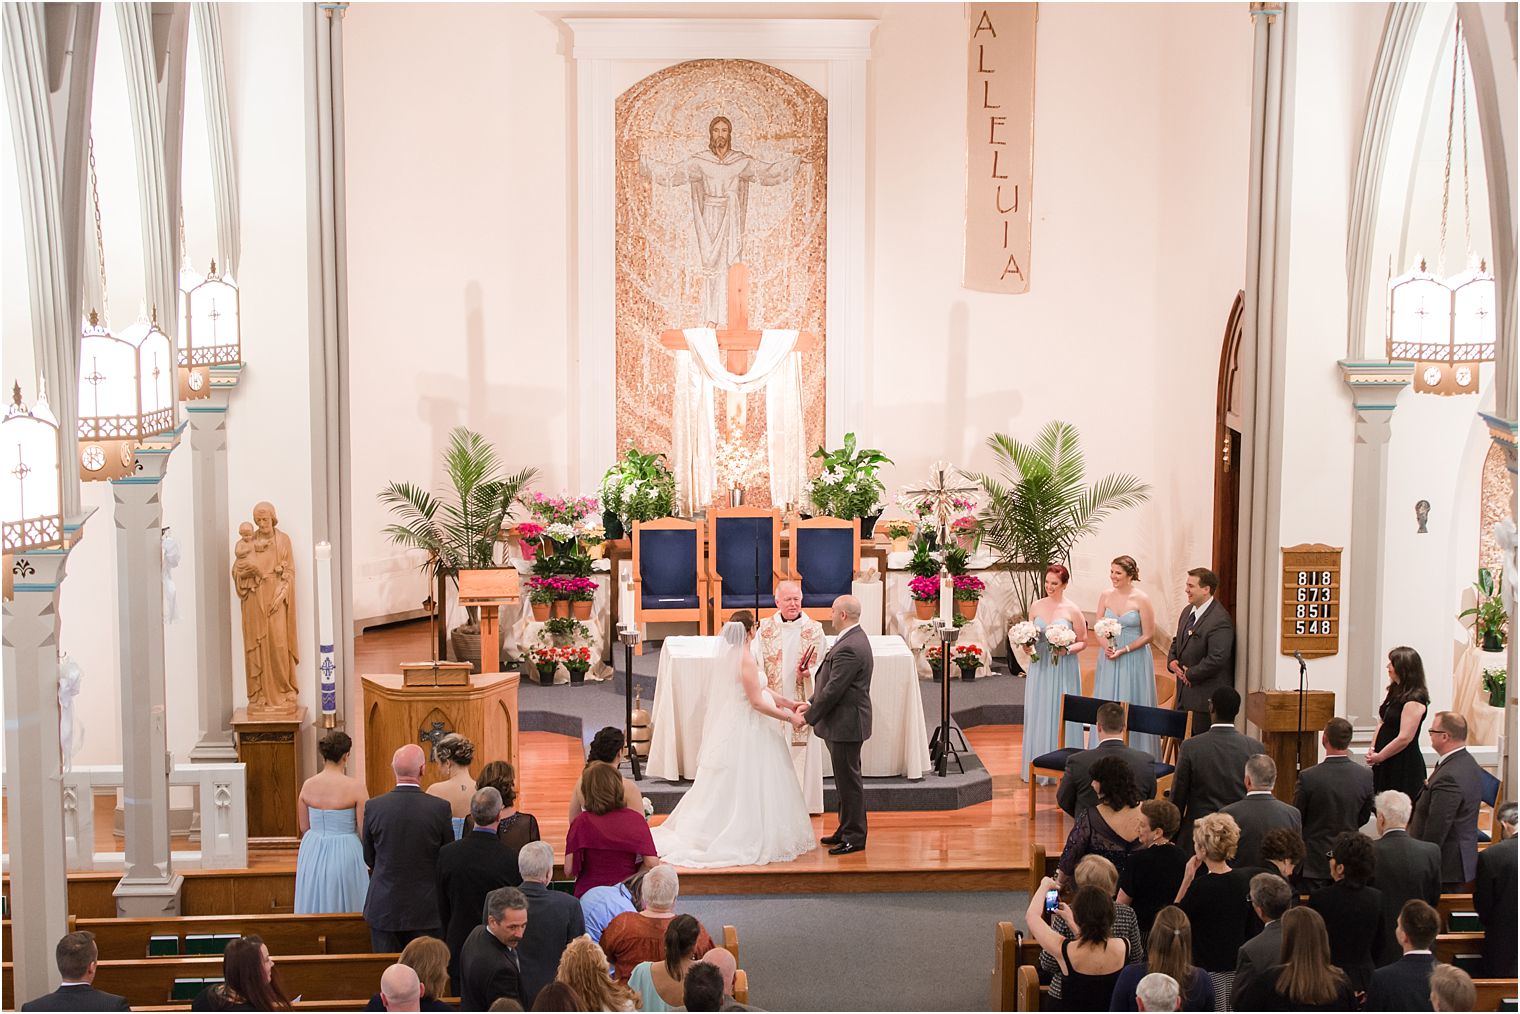 Catholic wedding ceremony at St. Rose of Lima in Freehold, NJ